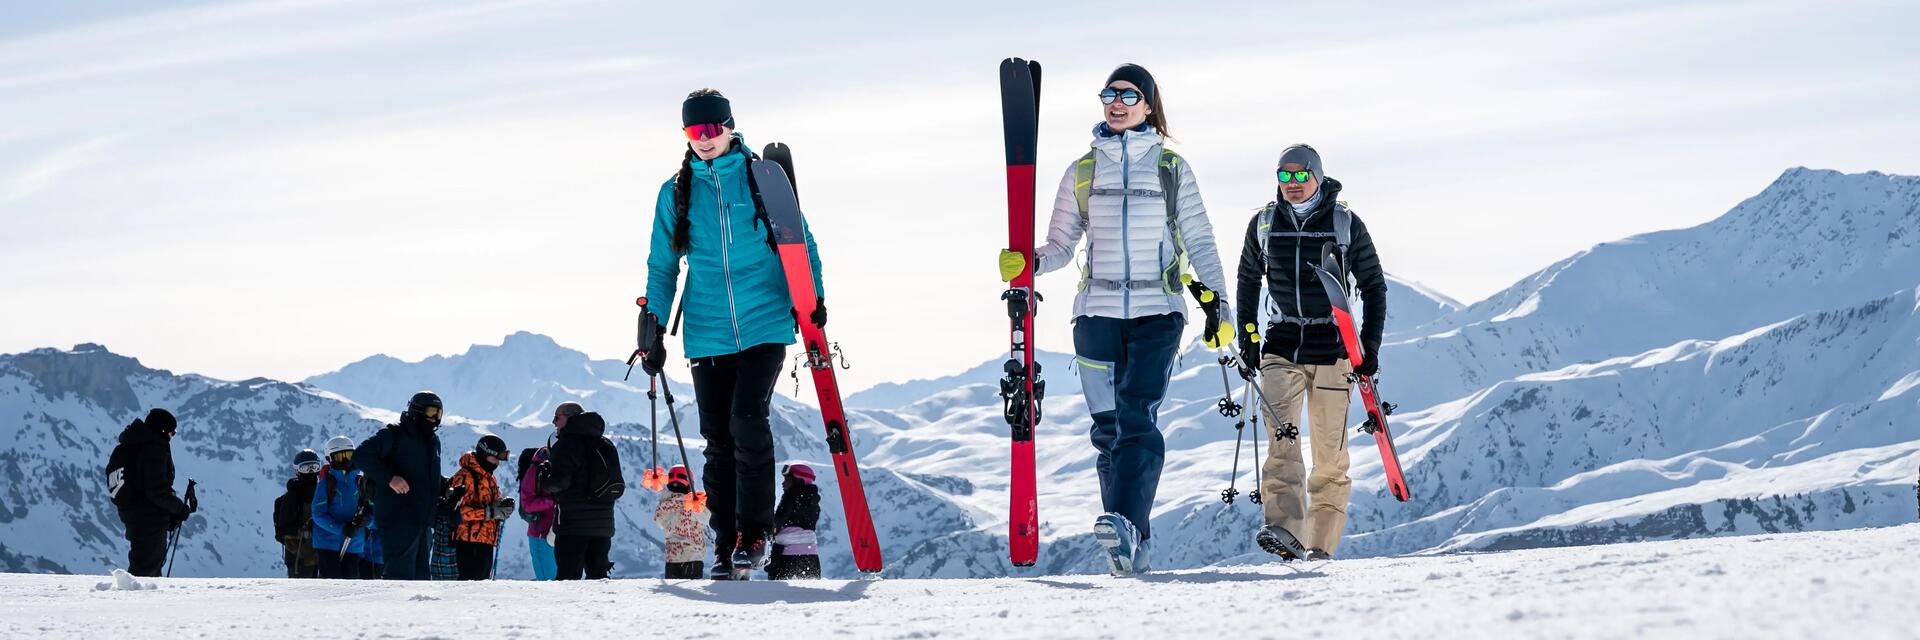 Narciarze idący na stoku trzymając kije narciarskie i narty dobrane do wzrostu 